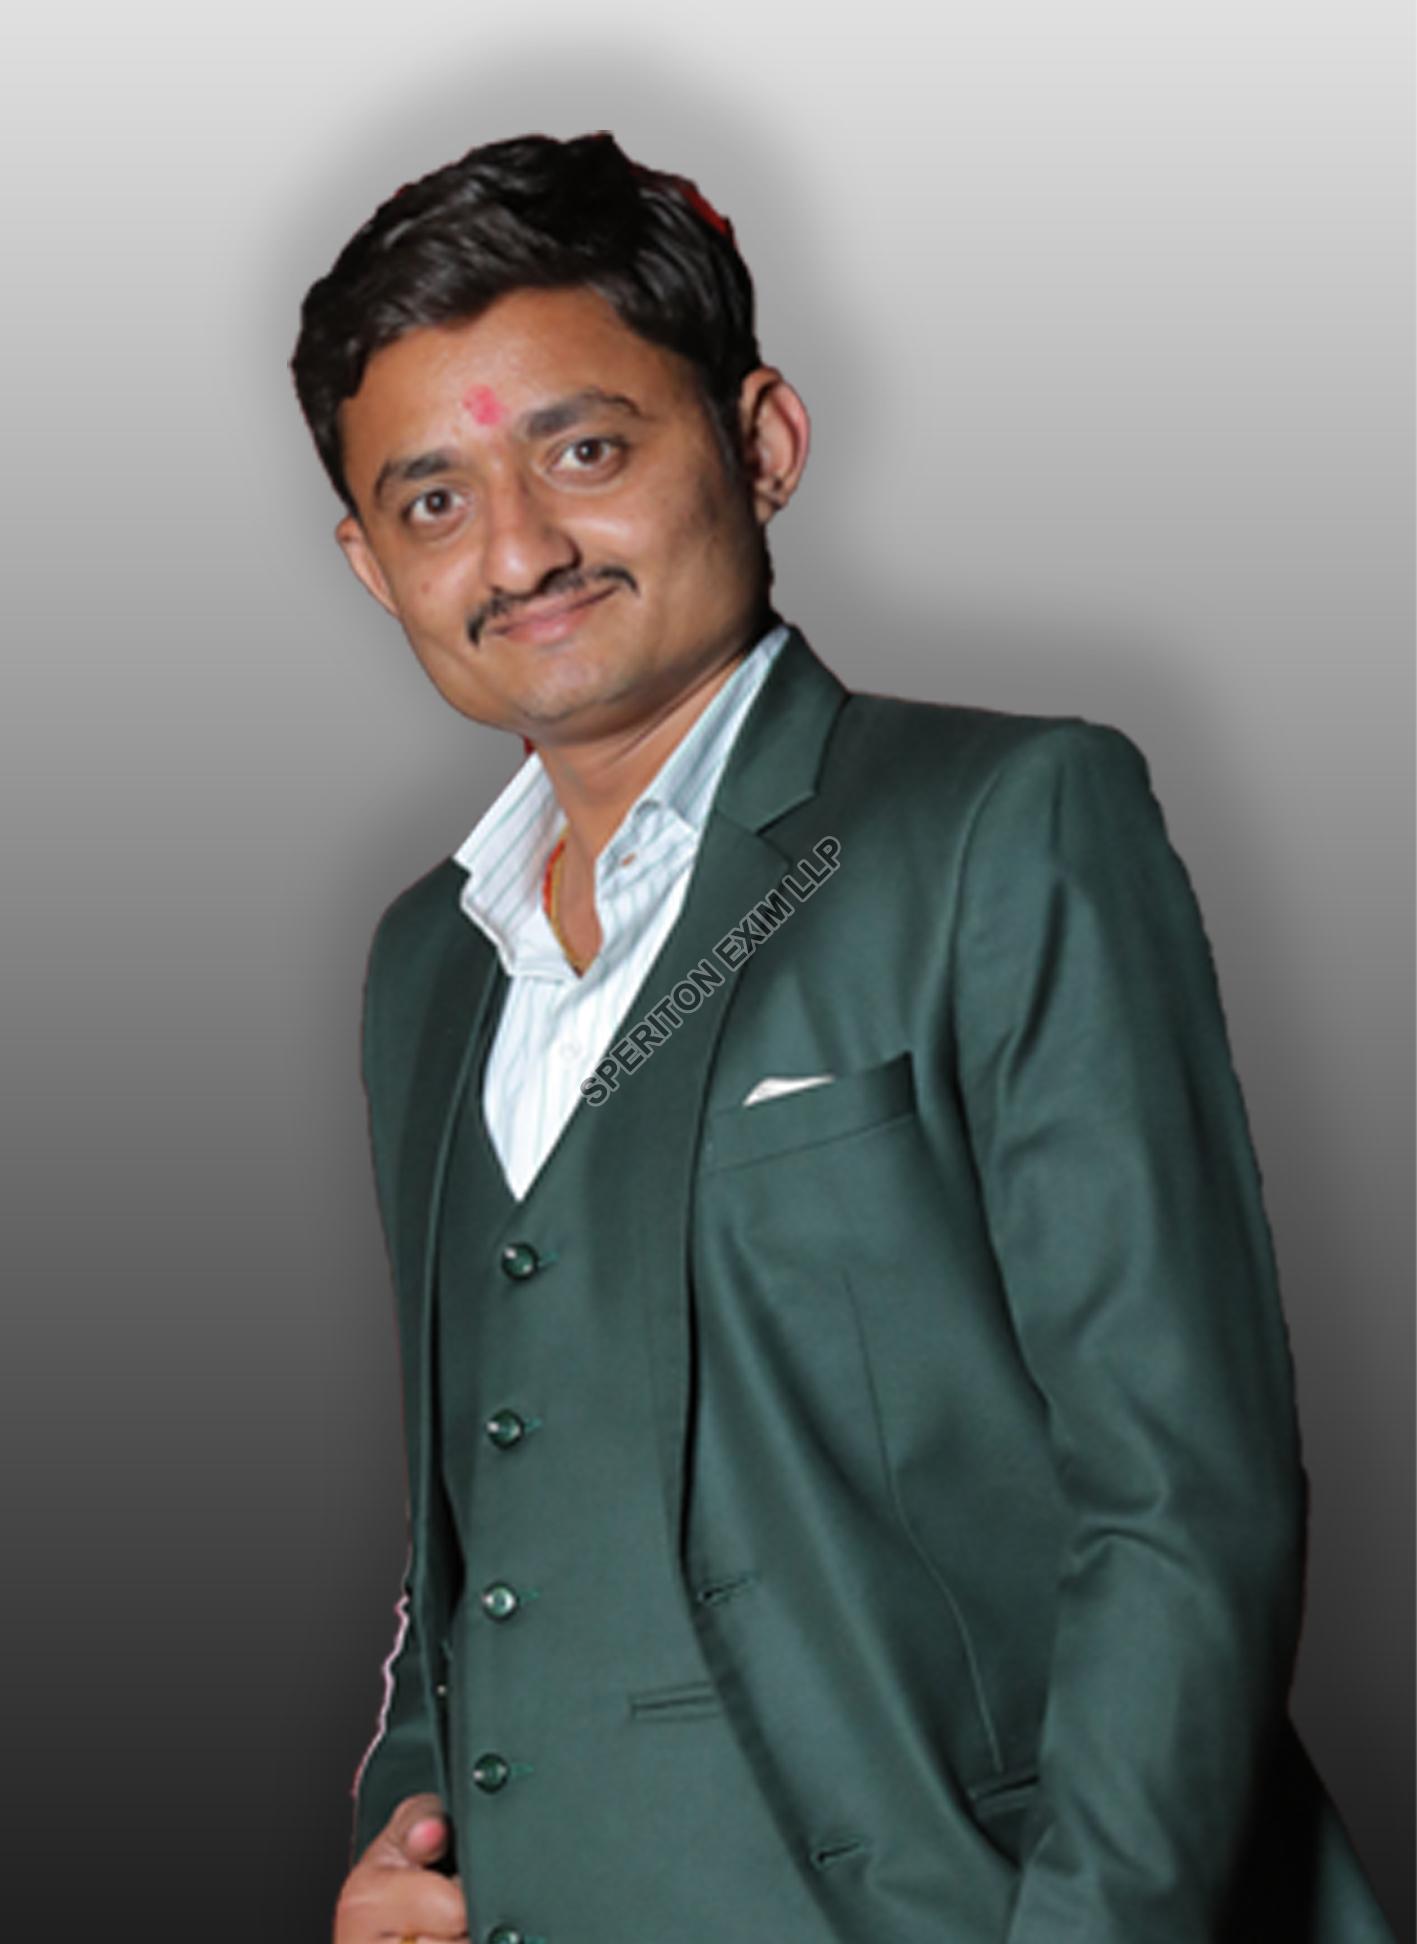 Mr. Mayur Patel